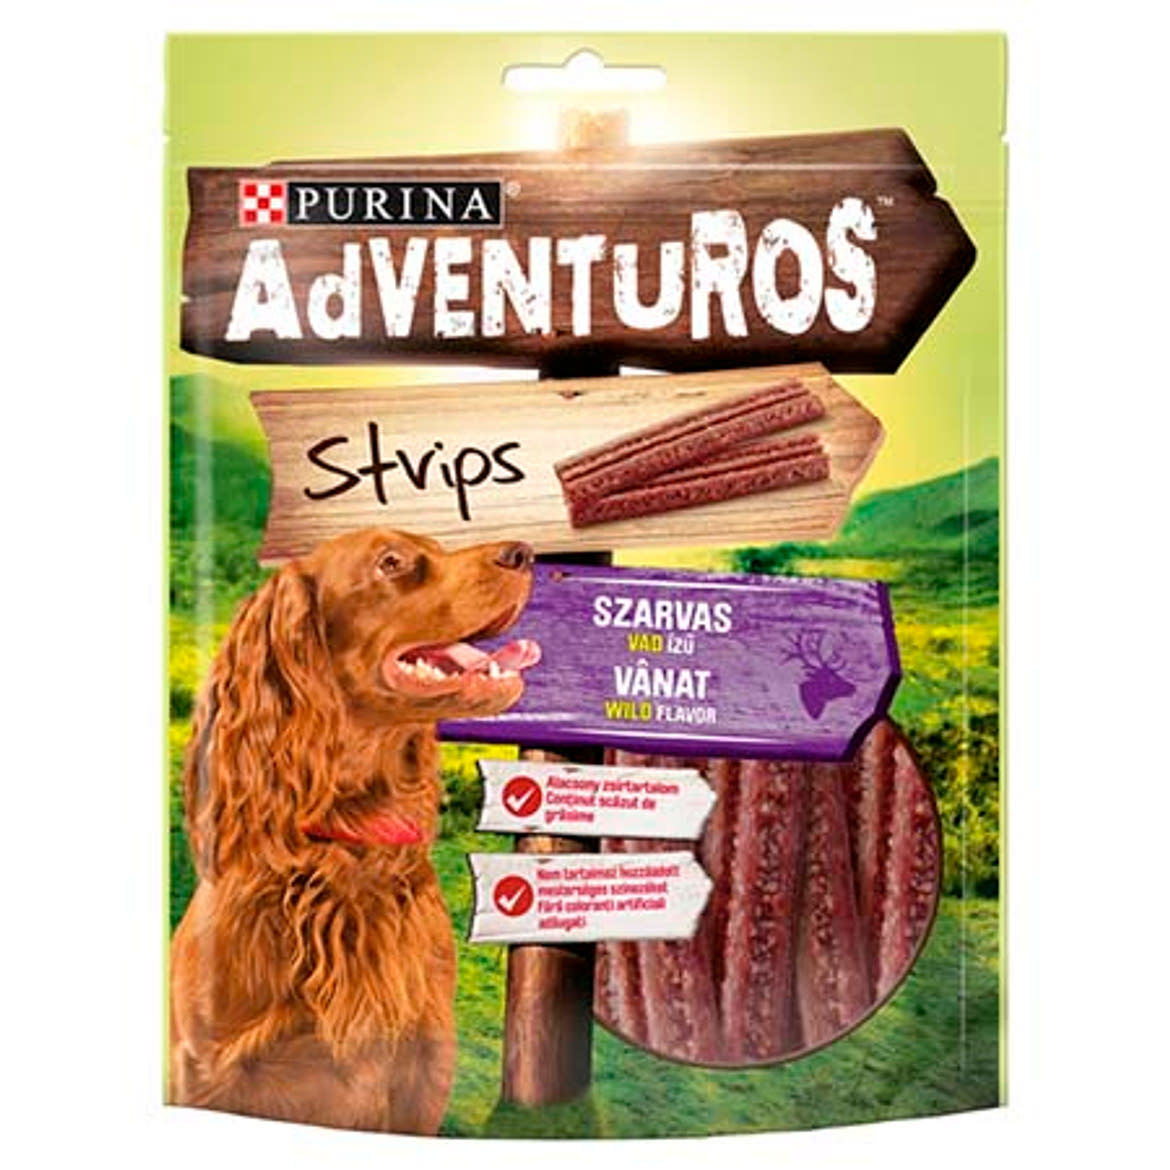 Adventuros Strips kutya jutalomfalat szarvas